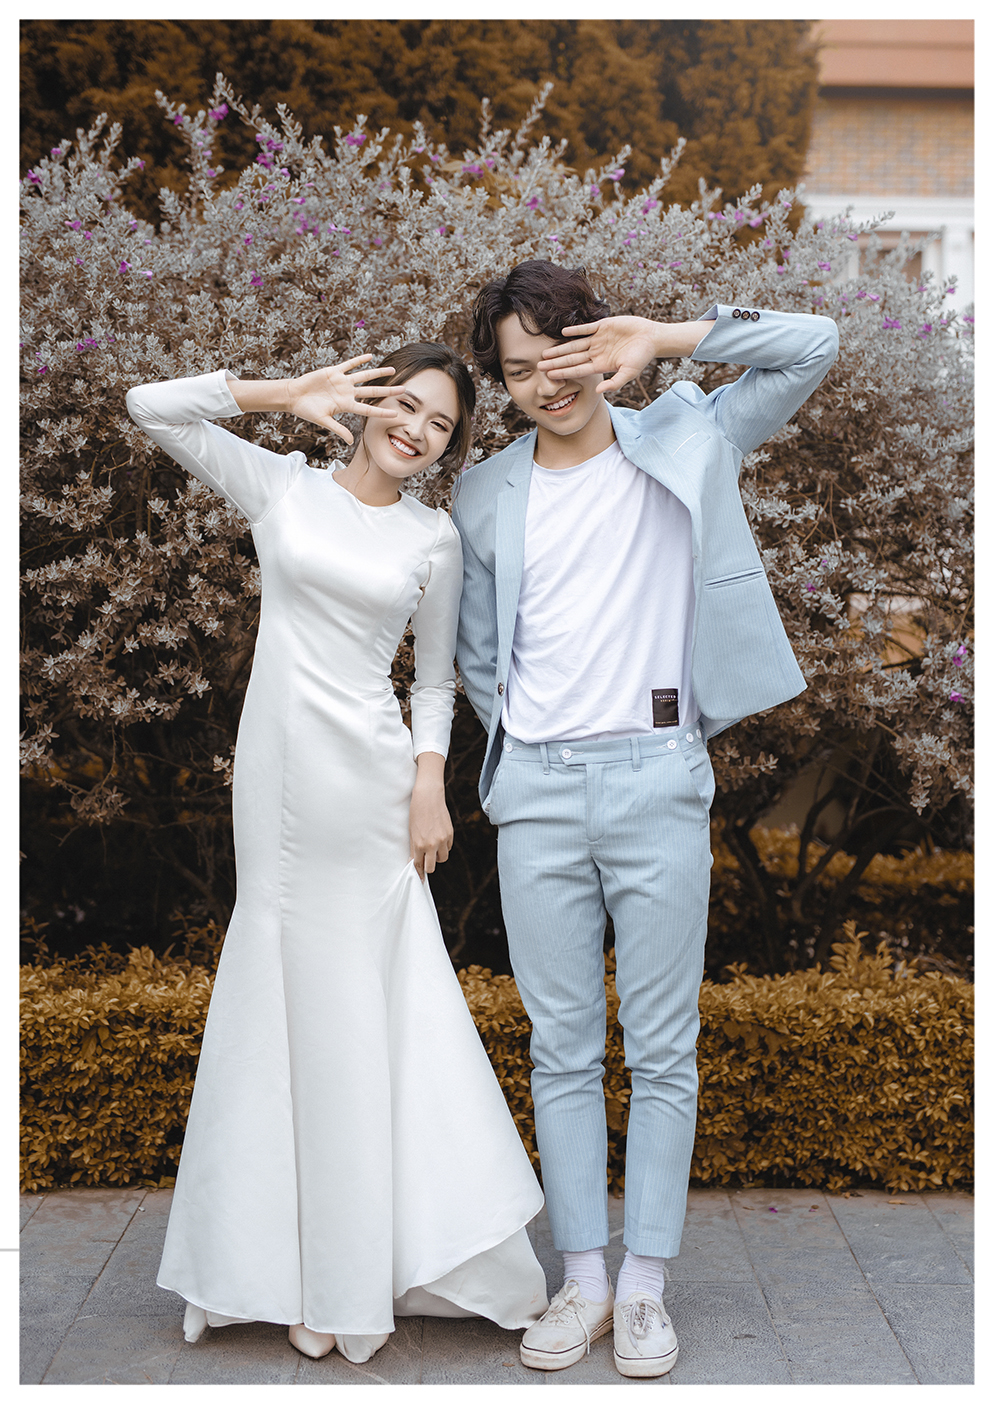 4 Studio chụp ảnh cưới đẹp và chất lượng nhất Lục Ngạn Bắc Giang   ALONGWALKER